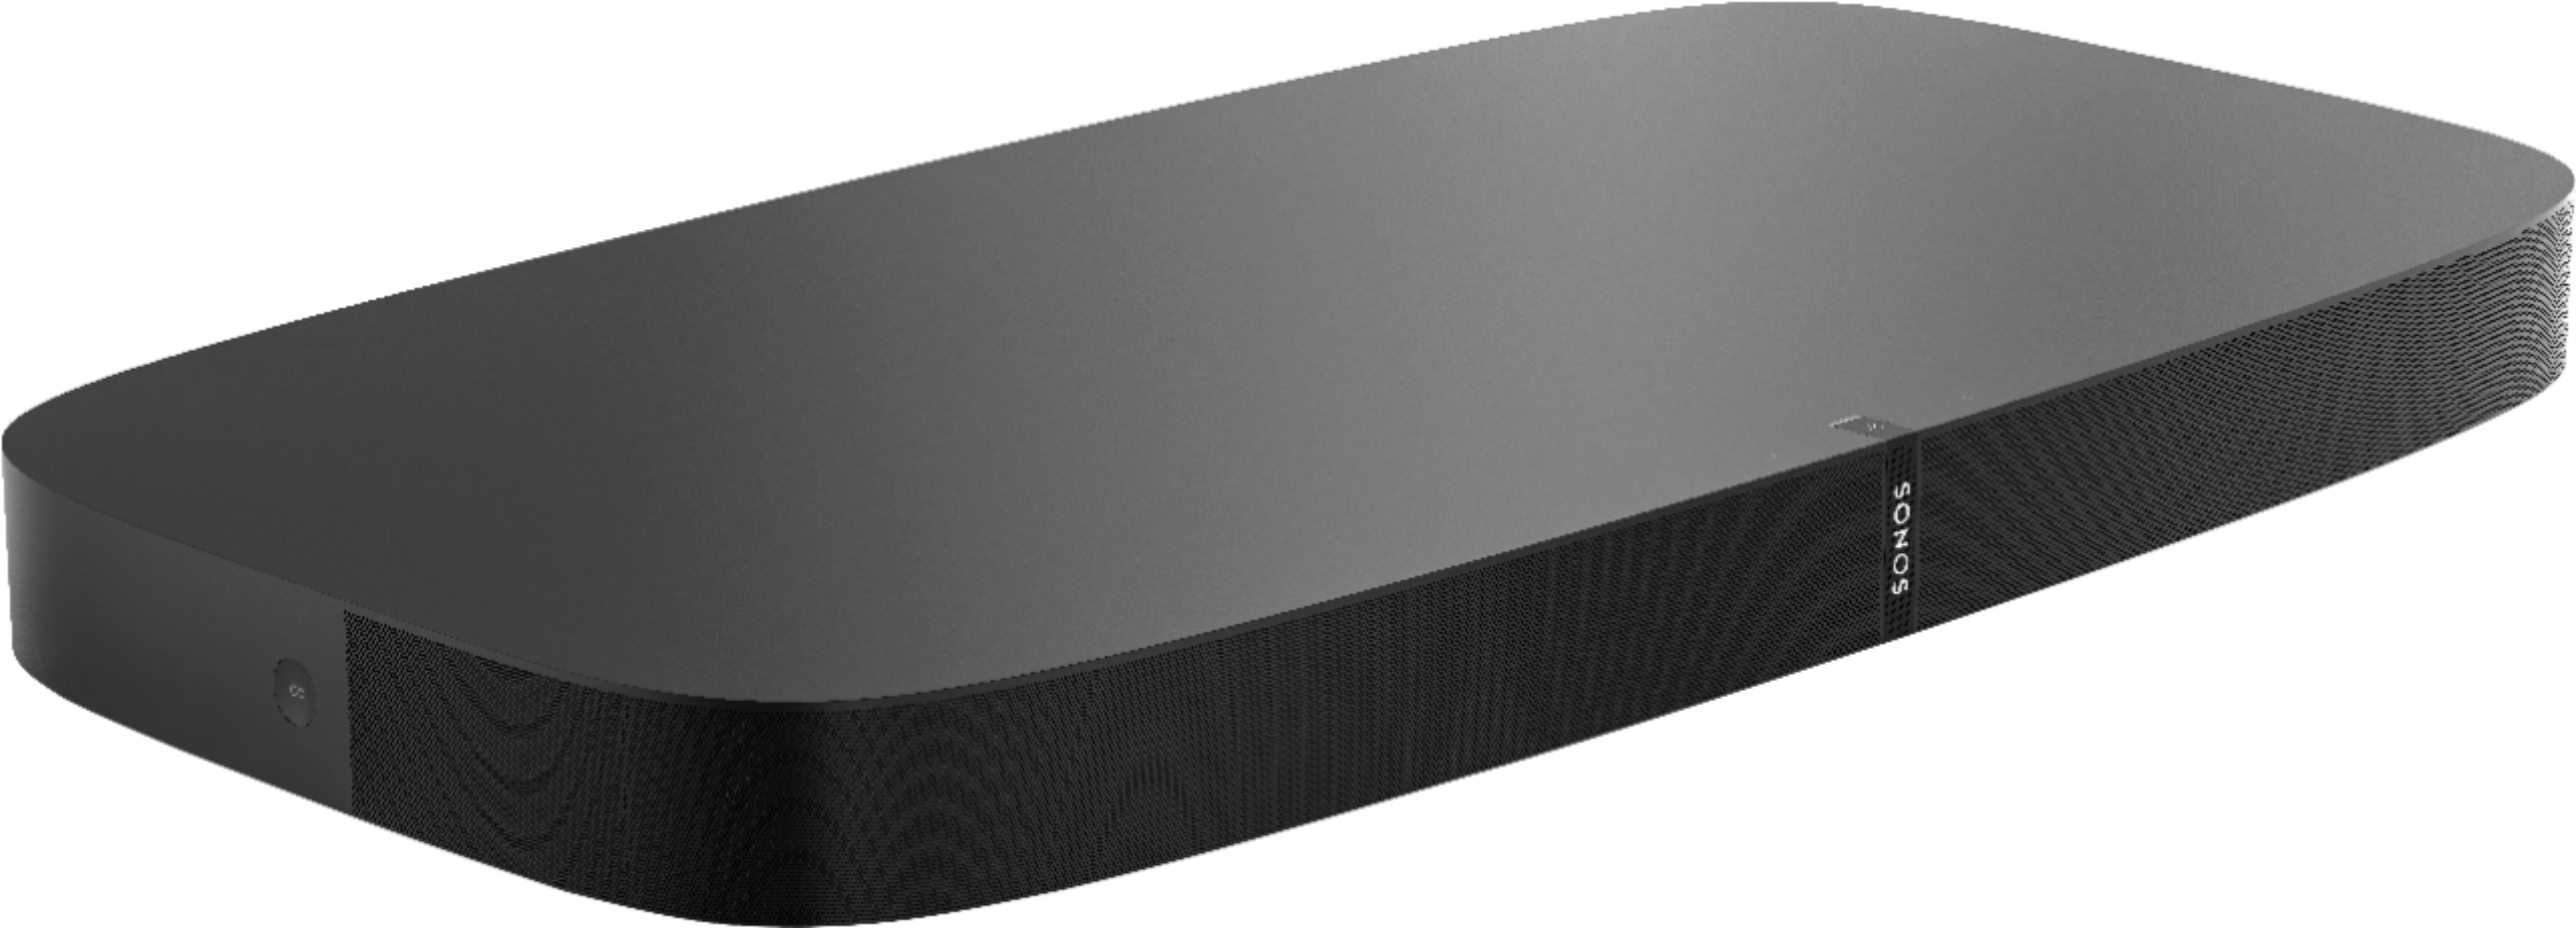 kontrast dybt Derfor Best Buy: Sonos Geek Squad Certified Refurbished 2.0-Channel Soundbar Black  GSRF-PBASEUS1BLK